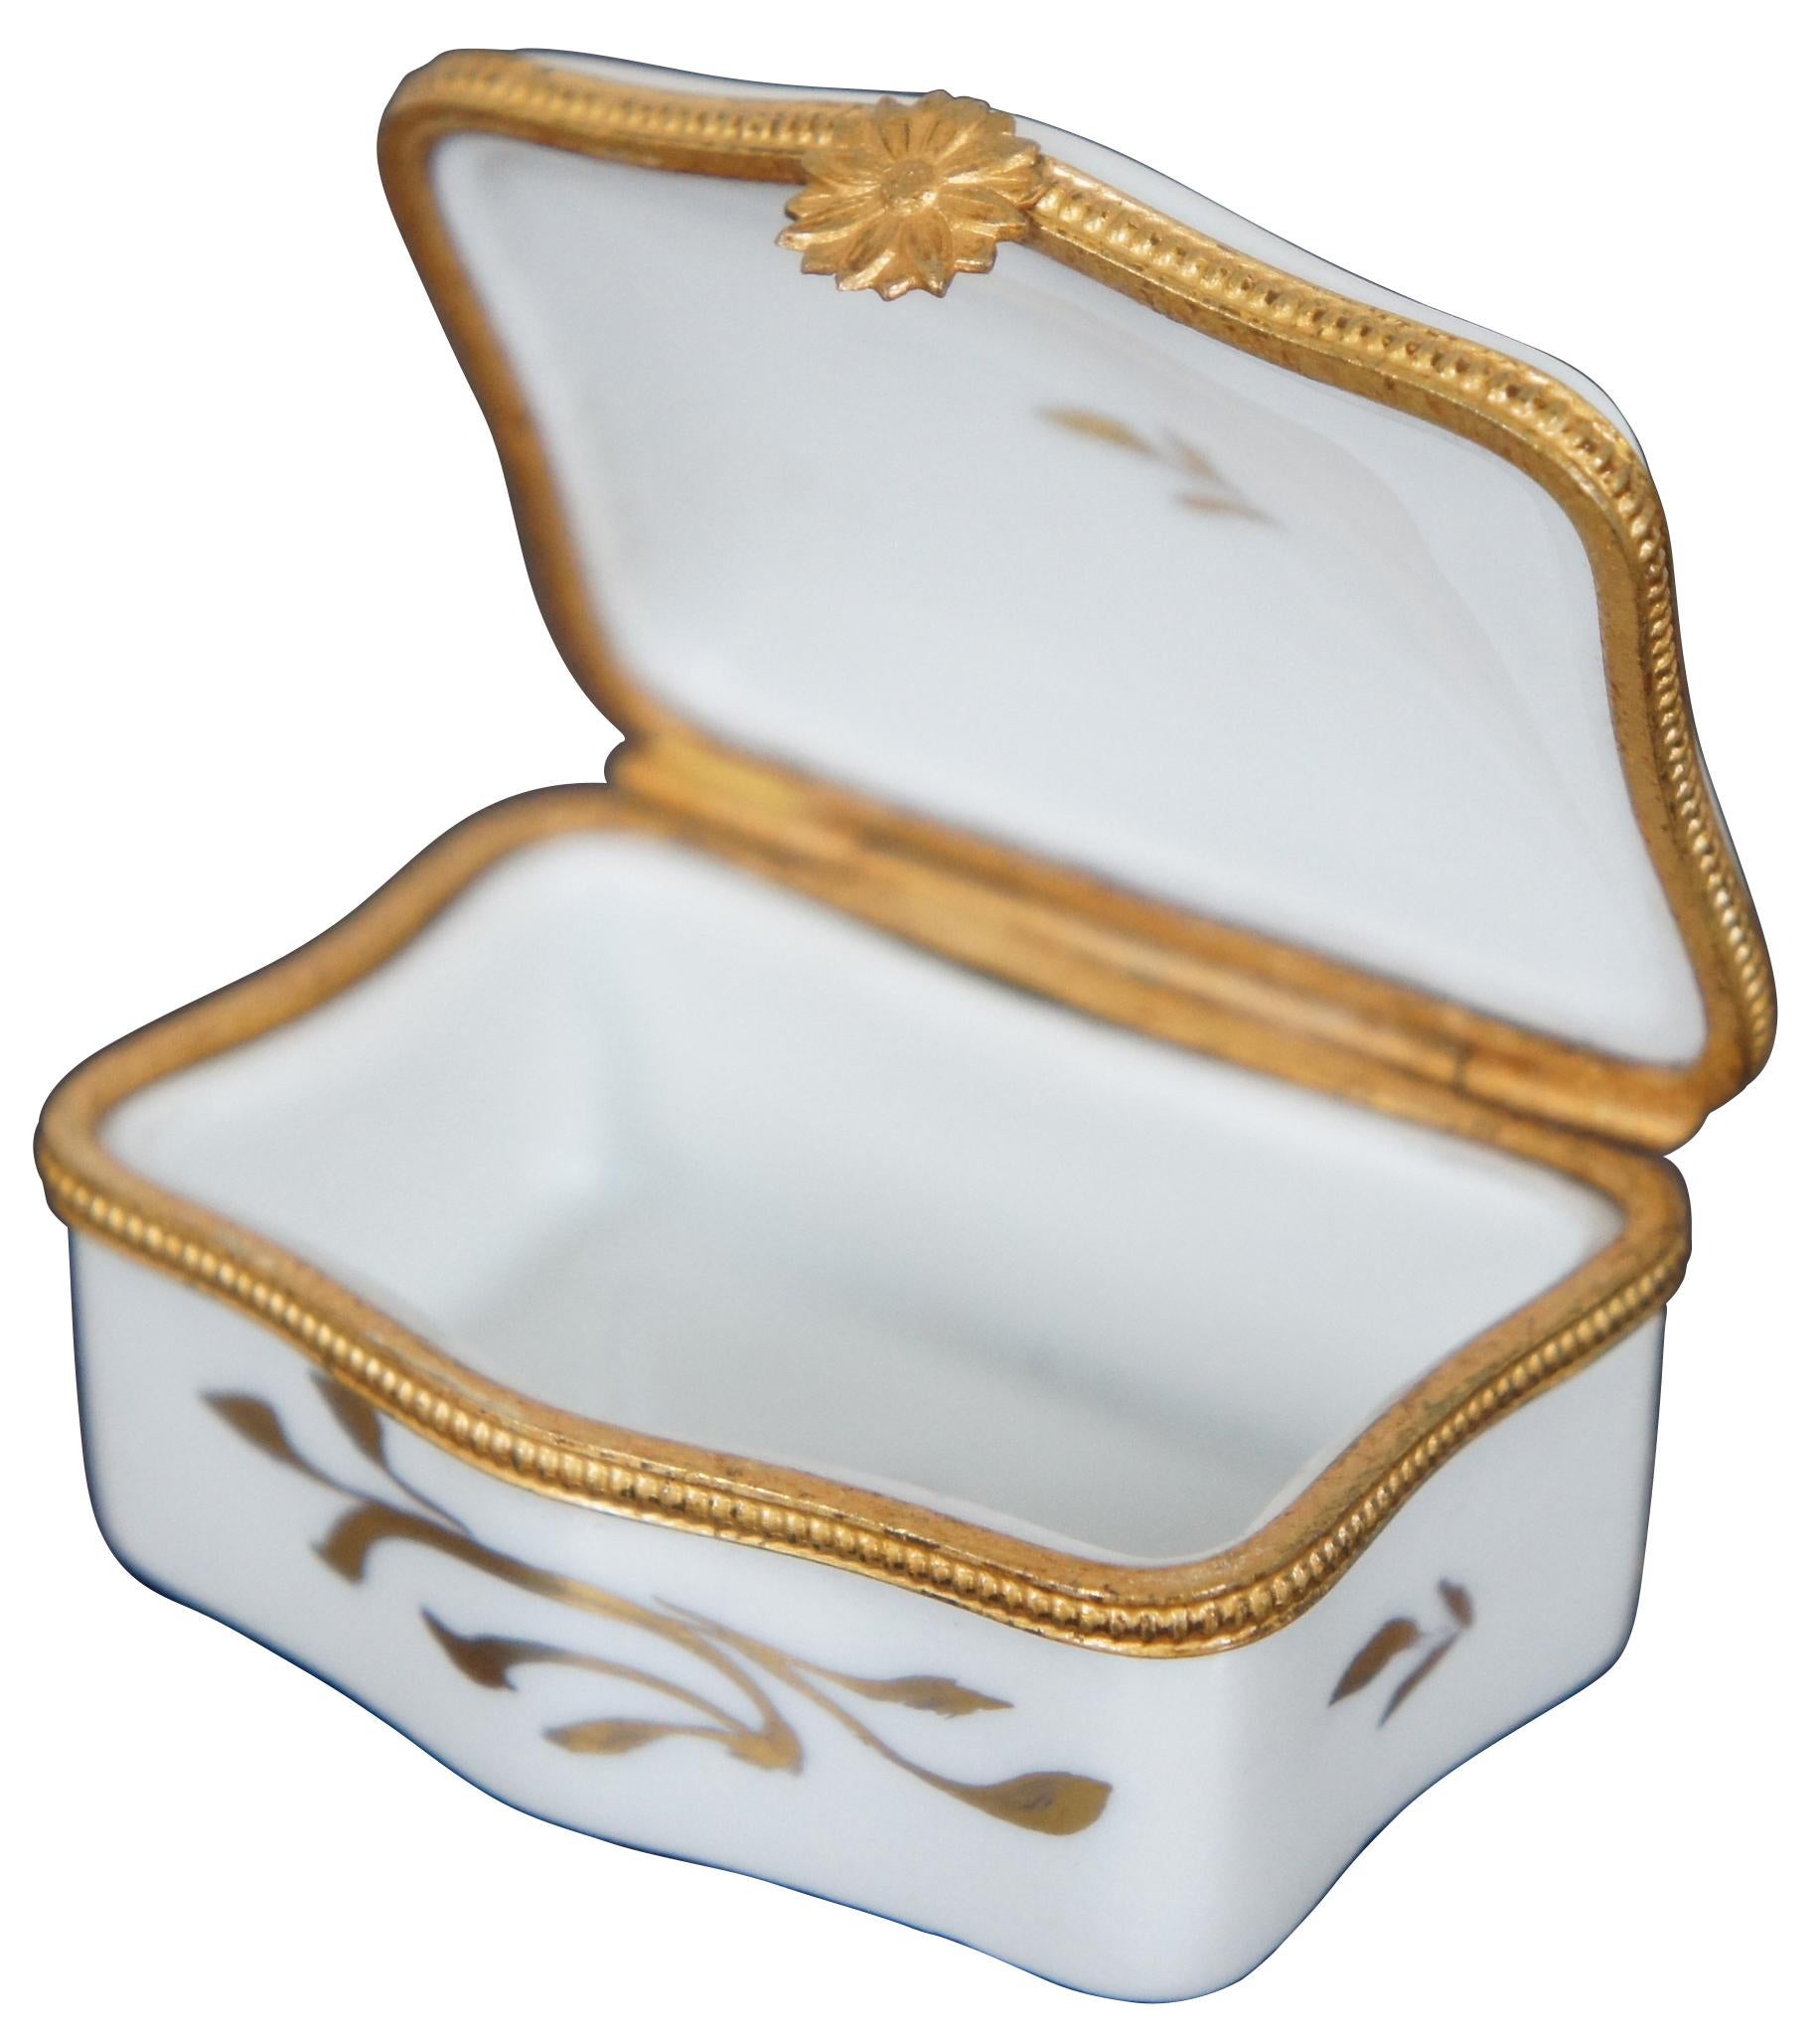 French Provincial Limoges Porcelain Trinket Box Toujour du Plaisir Pleasure Always Floral